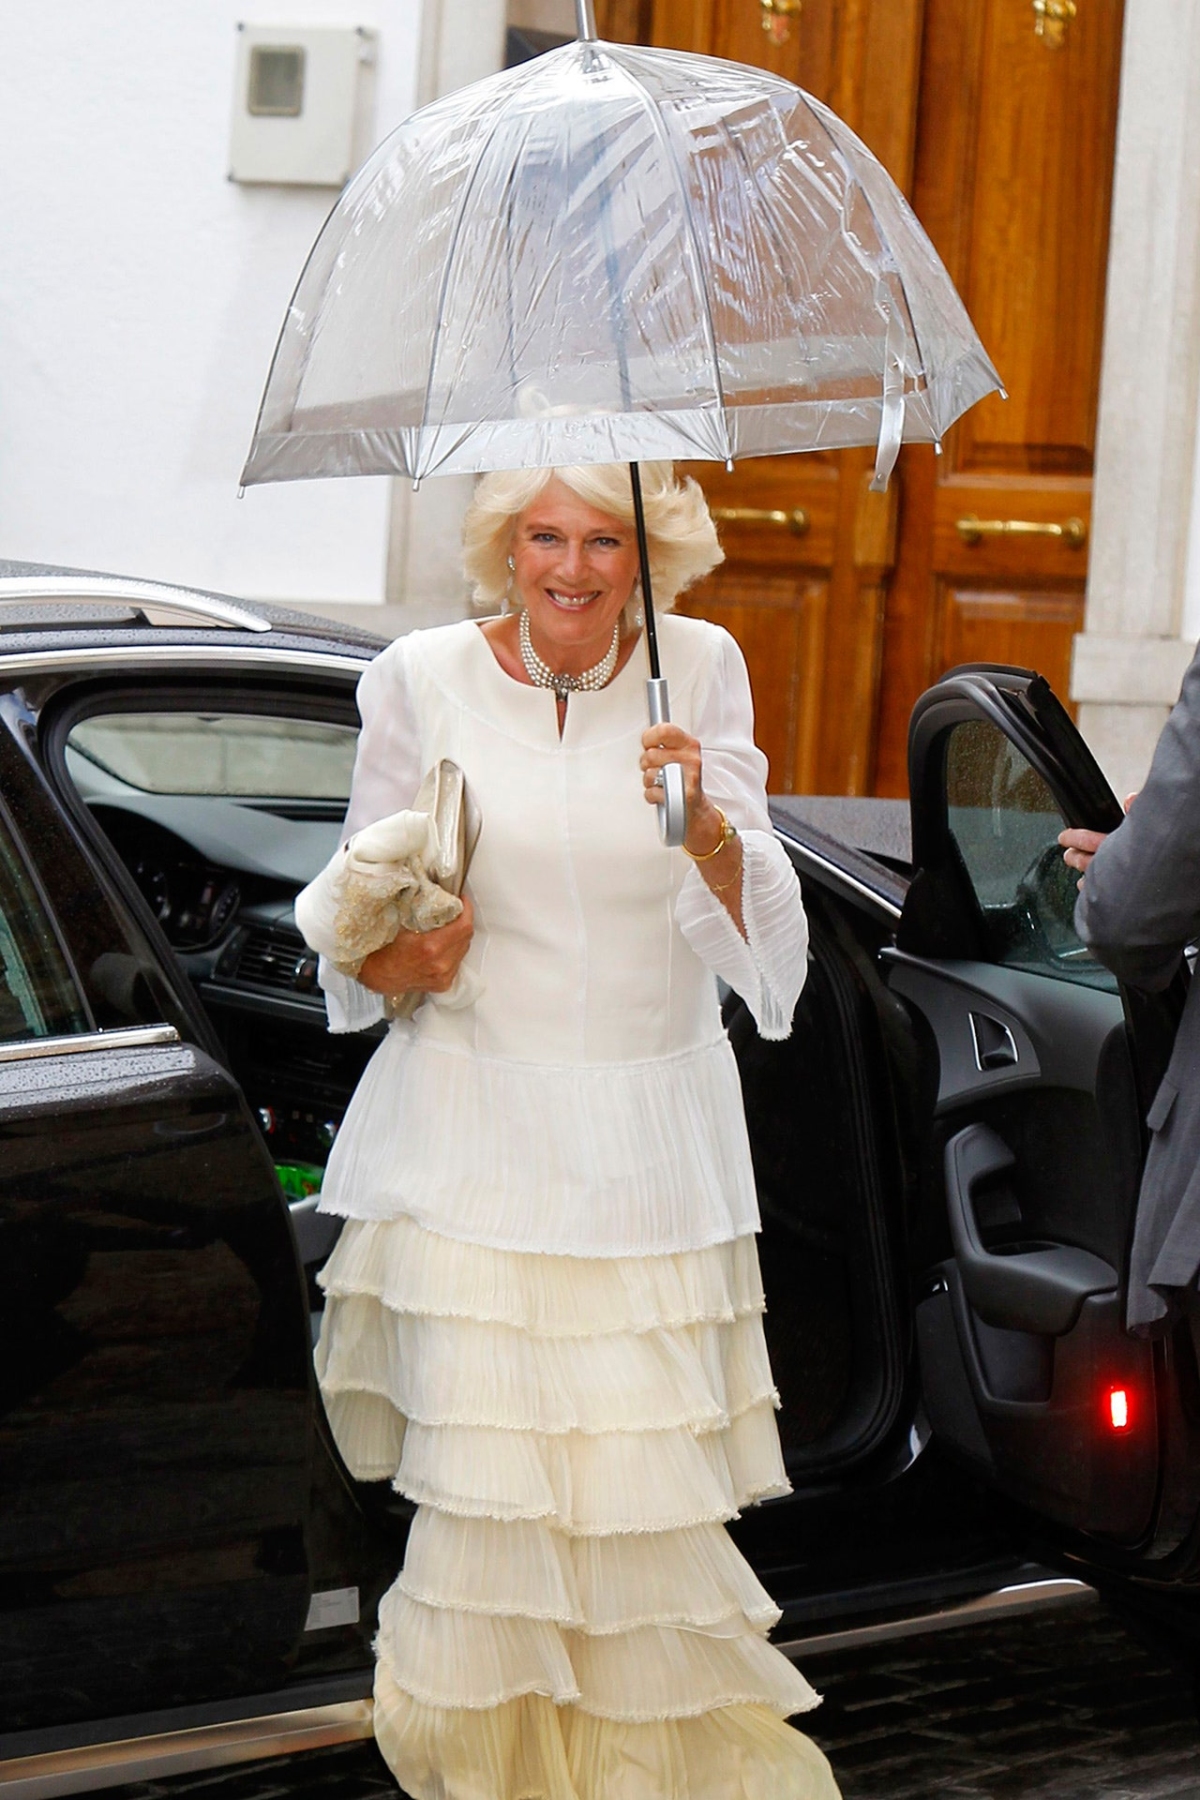 17 năm mặc đồ thanh lịch, Vương hậu nước Anh tương lai nổi bật nhờ một món đồ - Ảnh 3